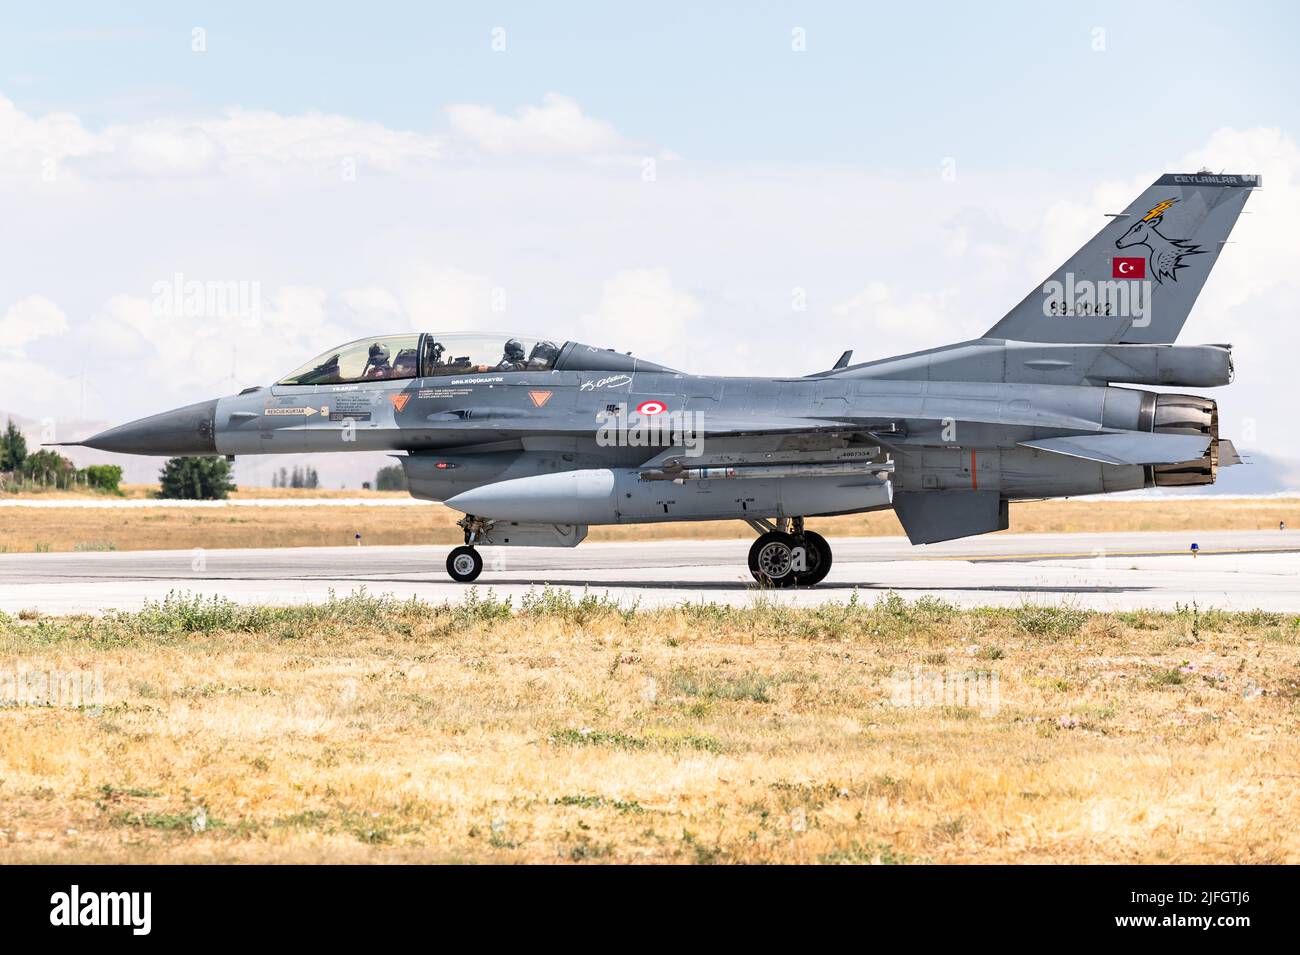 Un avion de chasse Faucon F-16 de l'armée de l'air turque à la base aérienne de Konya en Turquie. Banque D'Images